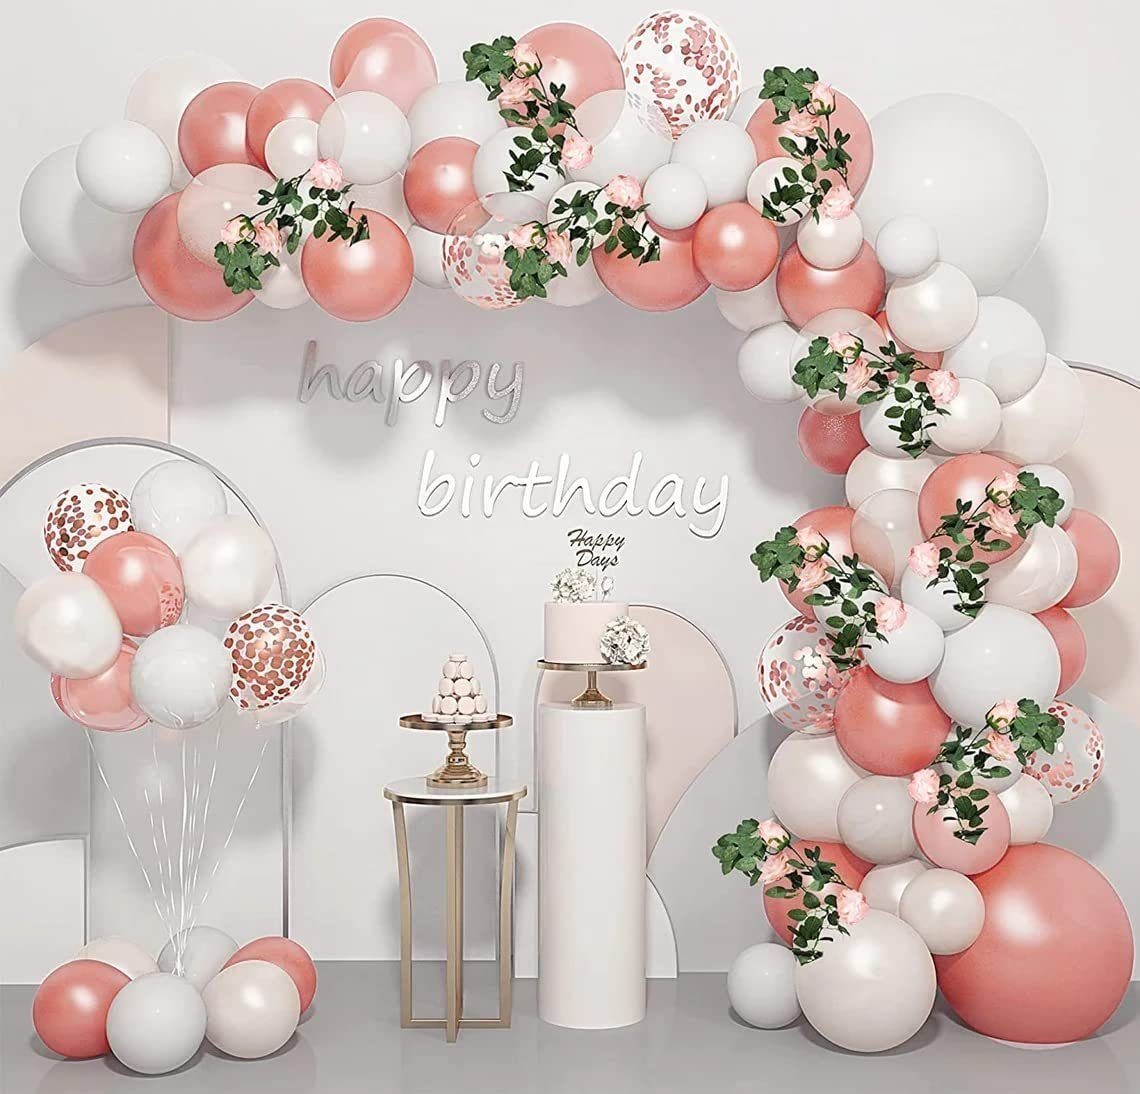 Ballonbogen Geburtstagsdekoration, vokarala Rosa Mädchen 101pcs Luftballon Hochzeitsballon